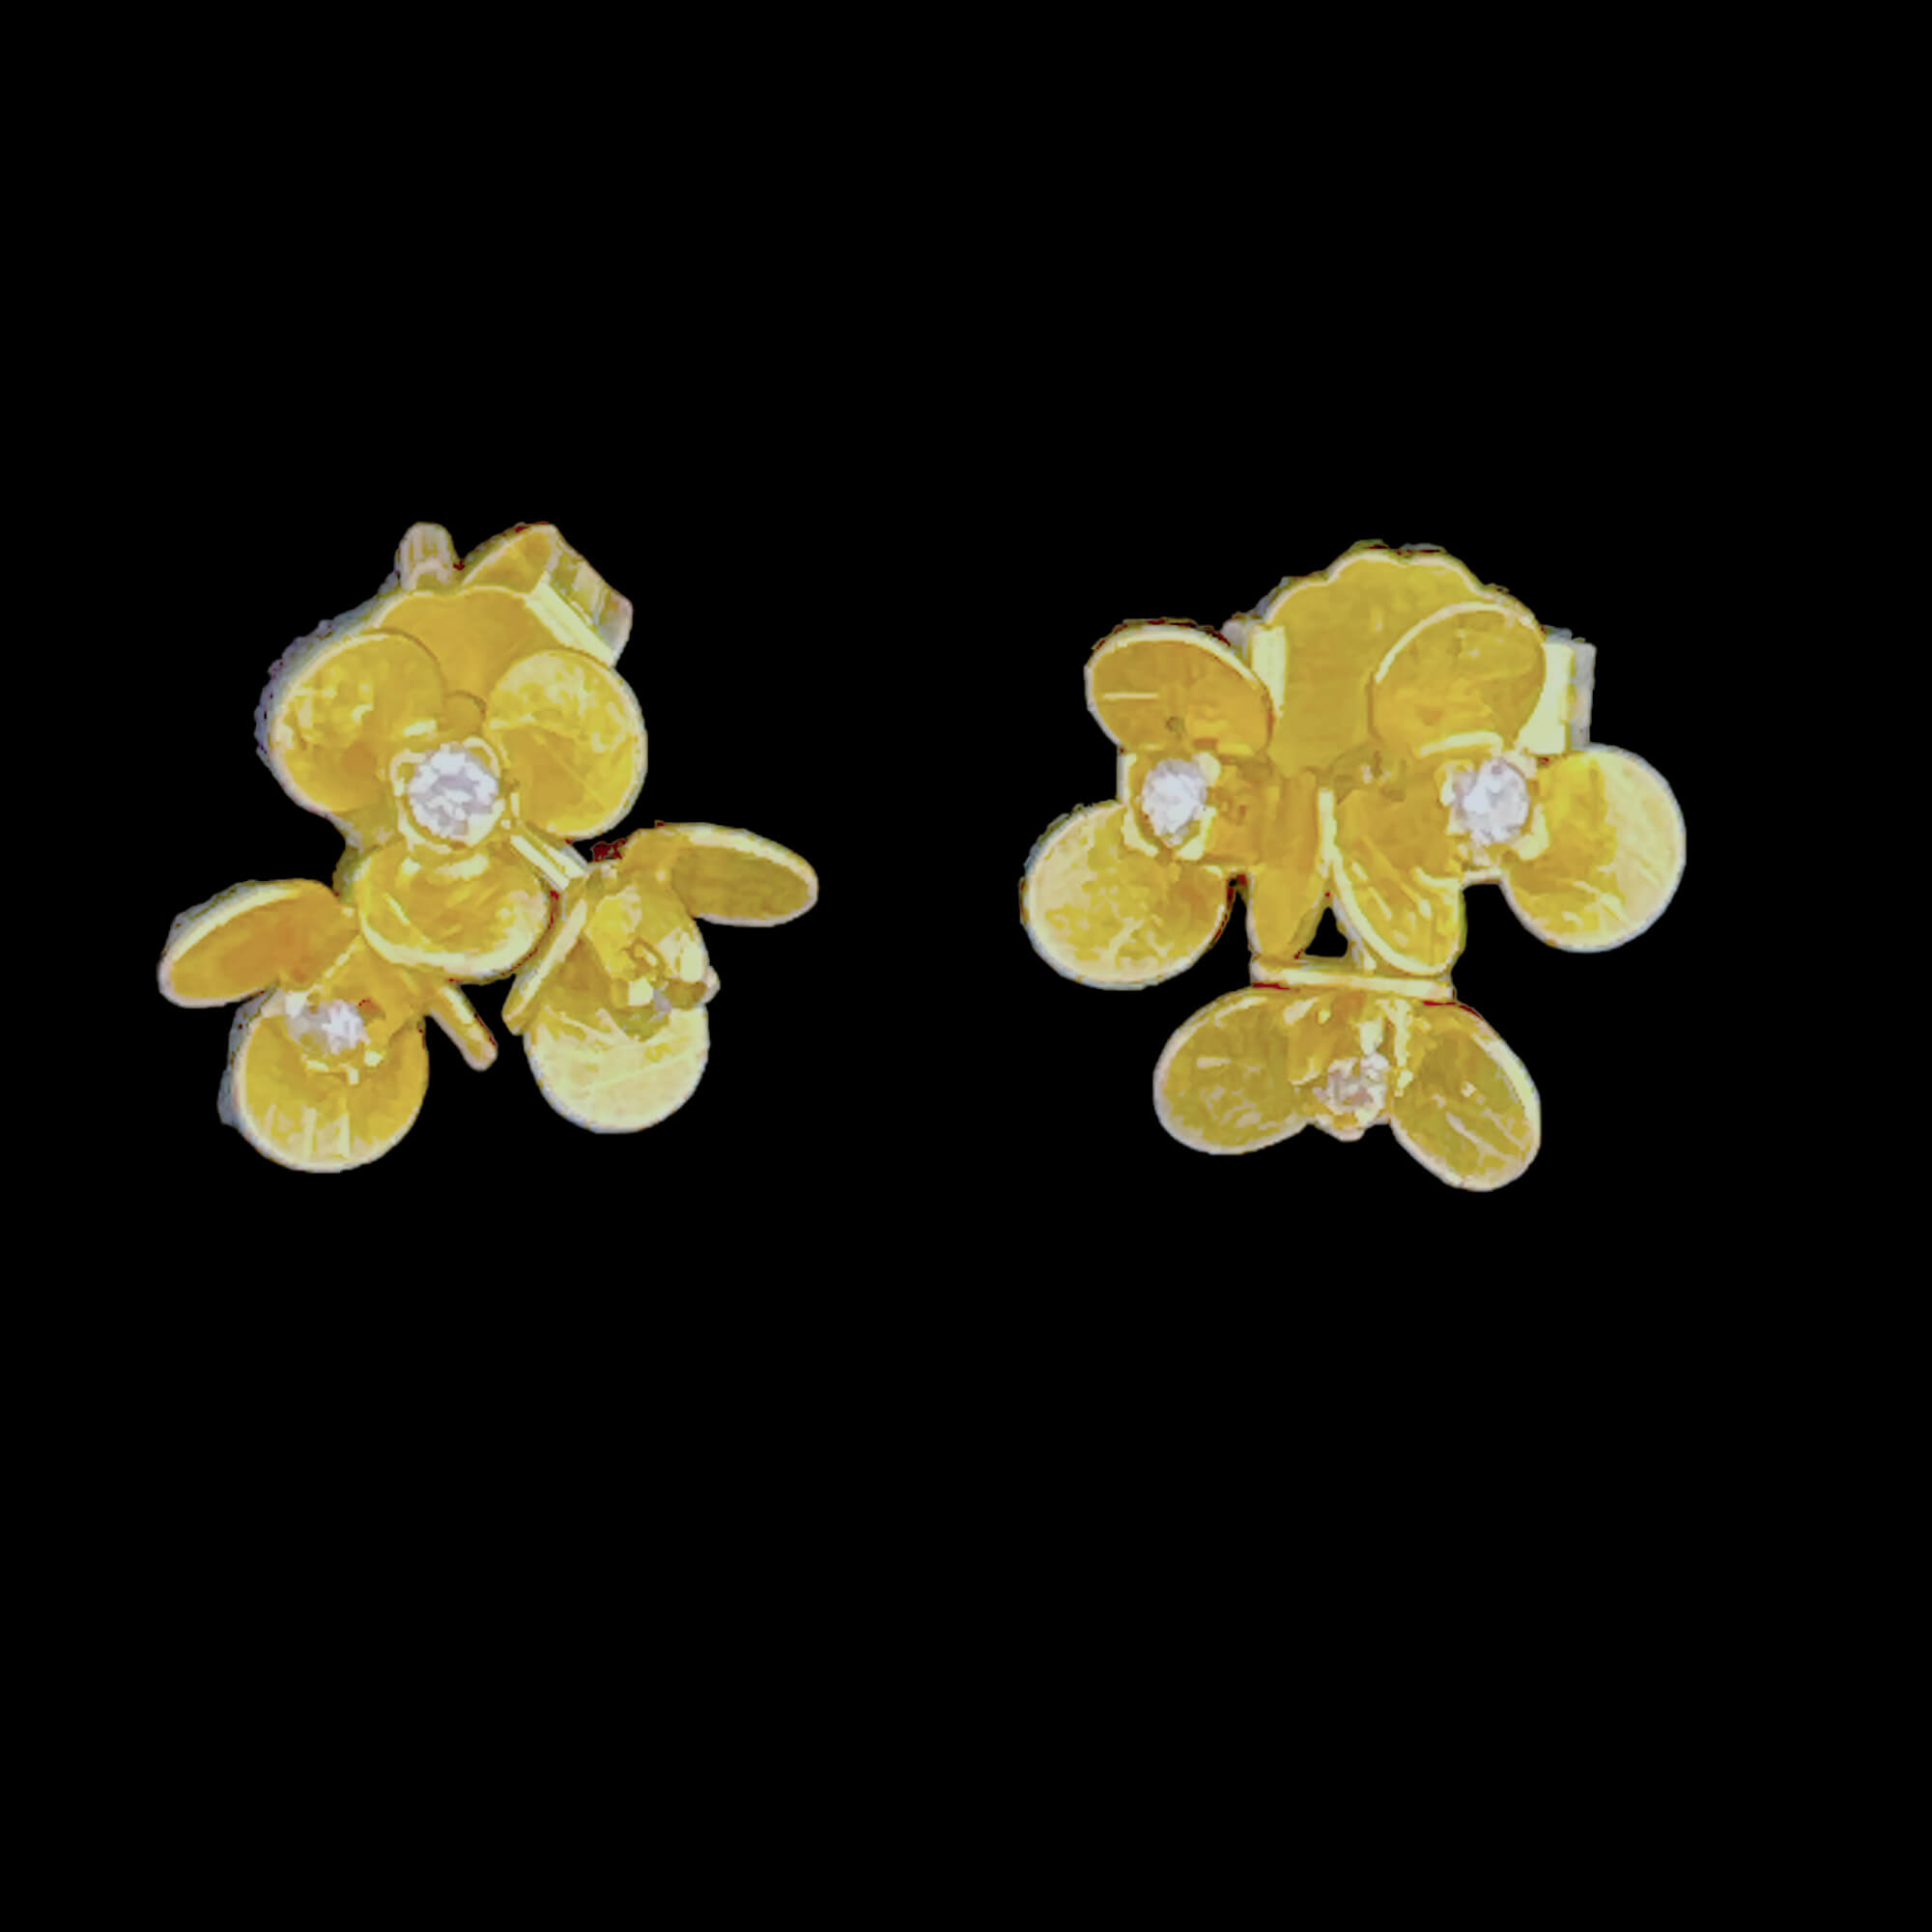 Gouden bloemoorbelletjes van 18kt met een diamantje